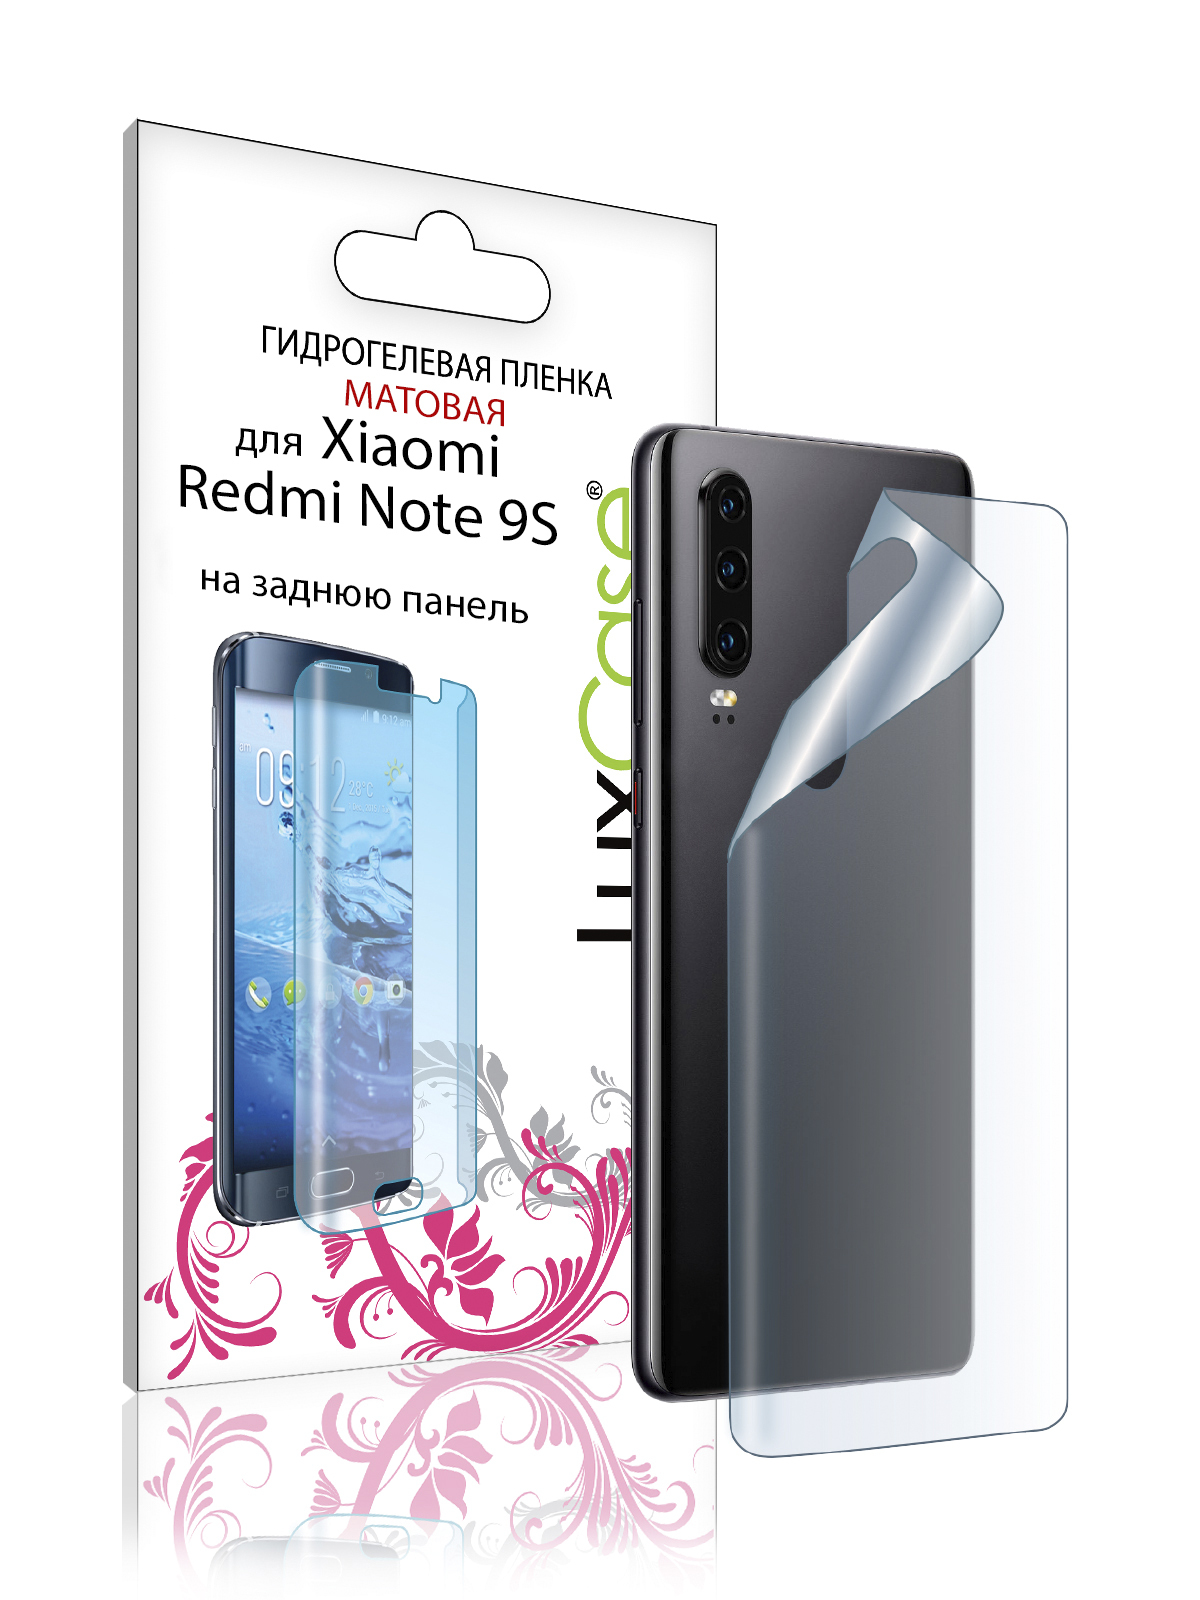 Пленка на заднюю панель LuxCase для Xiaomi Redmi Note 9S 0.14mm Matte 86283 жидкий чехол с блестками пара на краю света на xiaomi redmi note 9s сяоми редми нот 9s